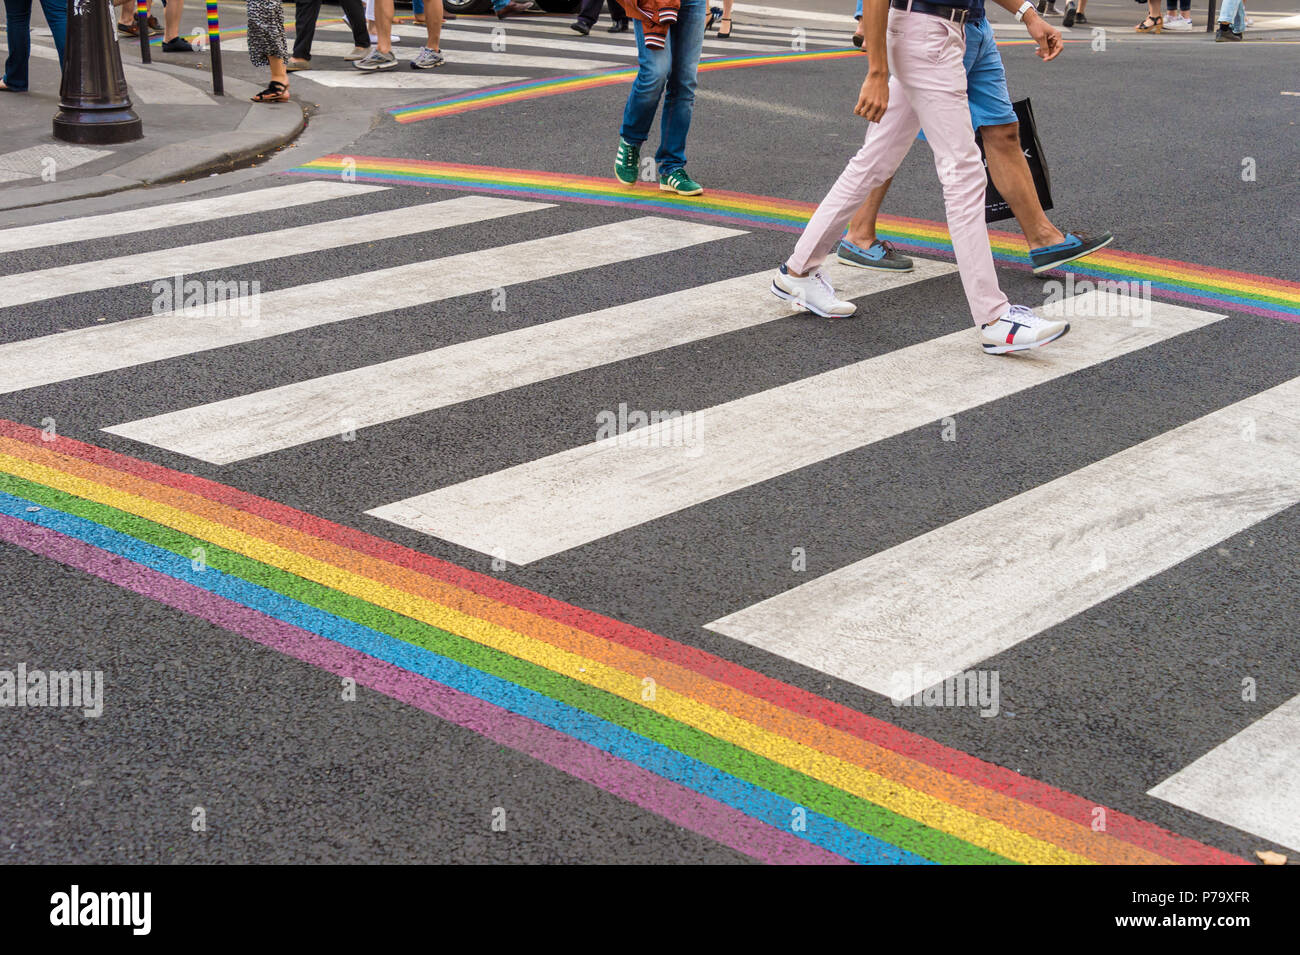 Paris, France - 24 June 2018: Gay pride flag crosswalk in Paris gay village with people crossing Stock Photo